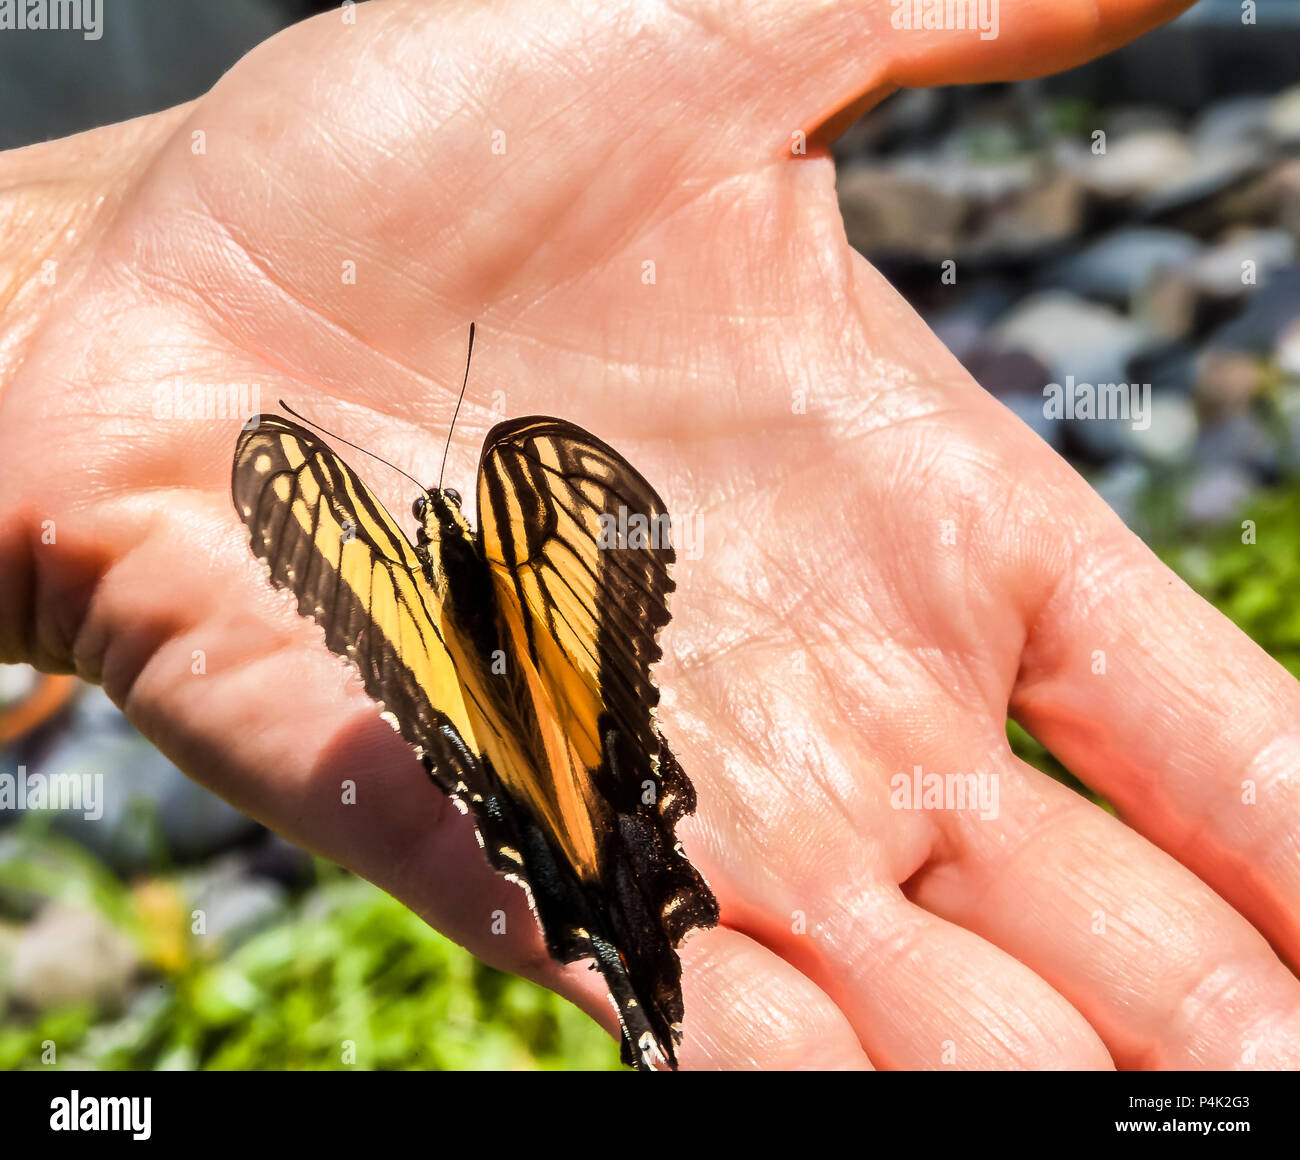 Schmetterling thront in der Palme der Hand der Person Stockfoto